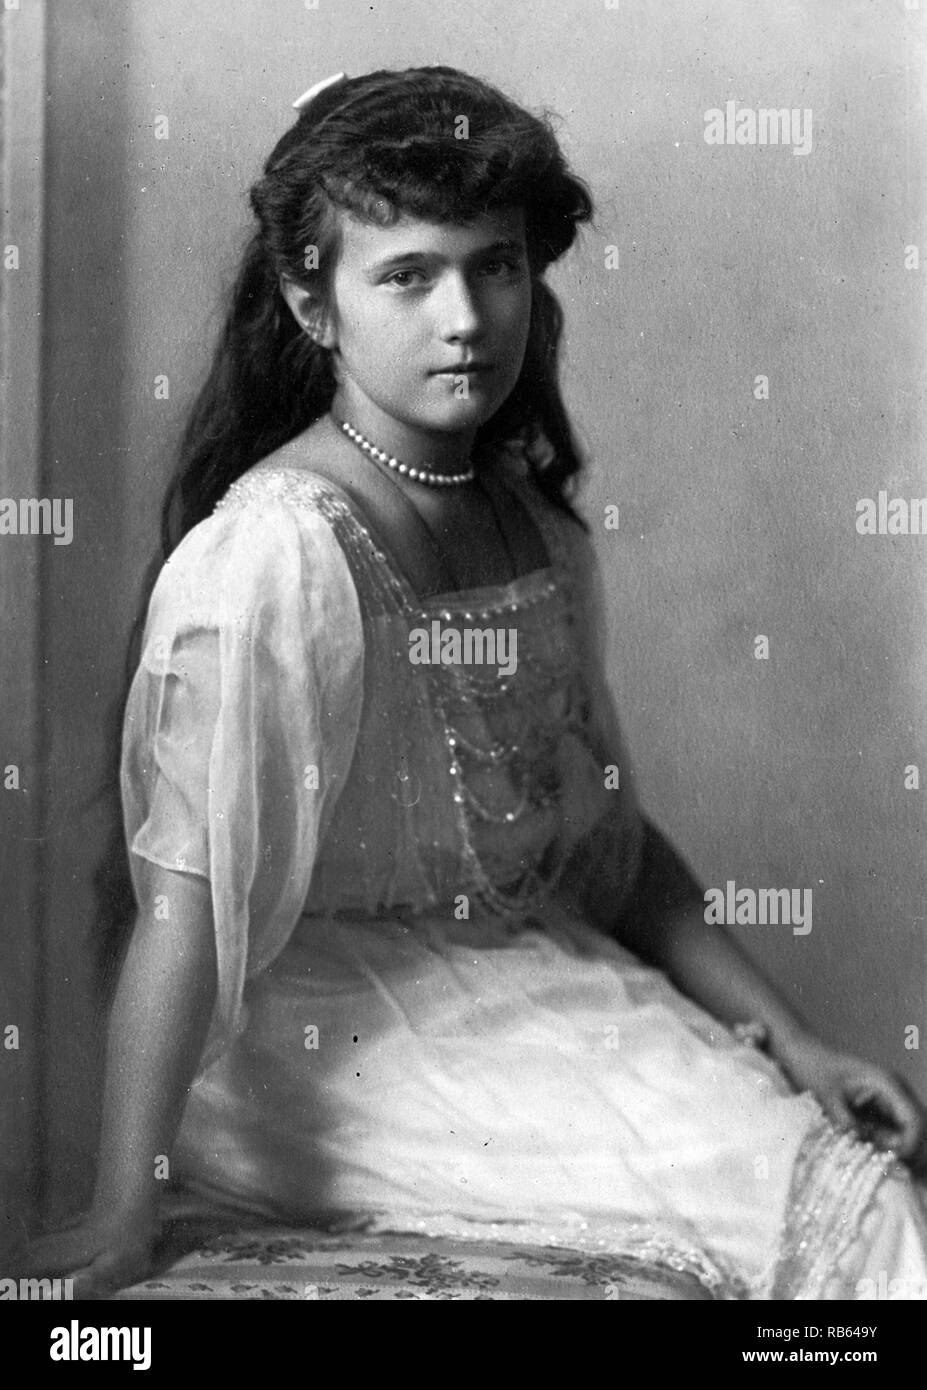 La gran duquesa Anastasia Nikolaevna de Rusia (18 de junio de 1901 - 17 de julio de 1918) La hija más joven del zar Nicolás II, el último soberano de la Rusia Imperial, y su esposa, la Zarina Alexandra Fyodorovna. Foto de stock